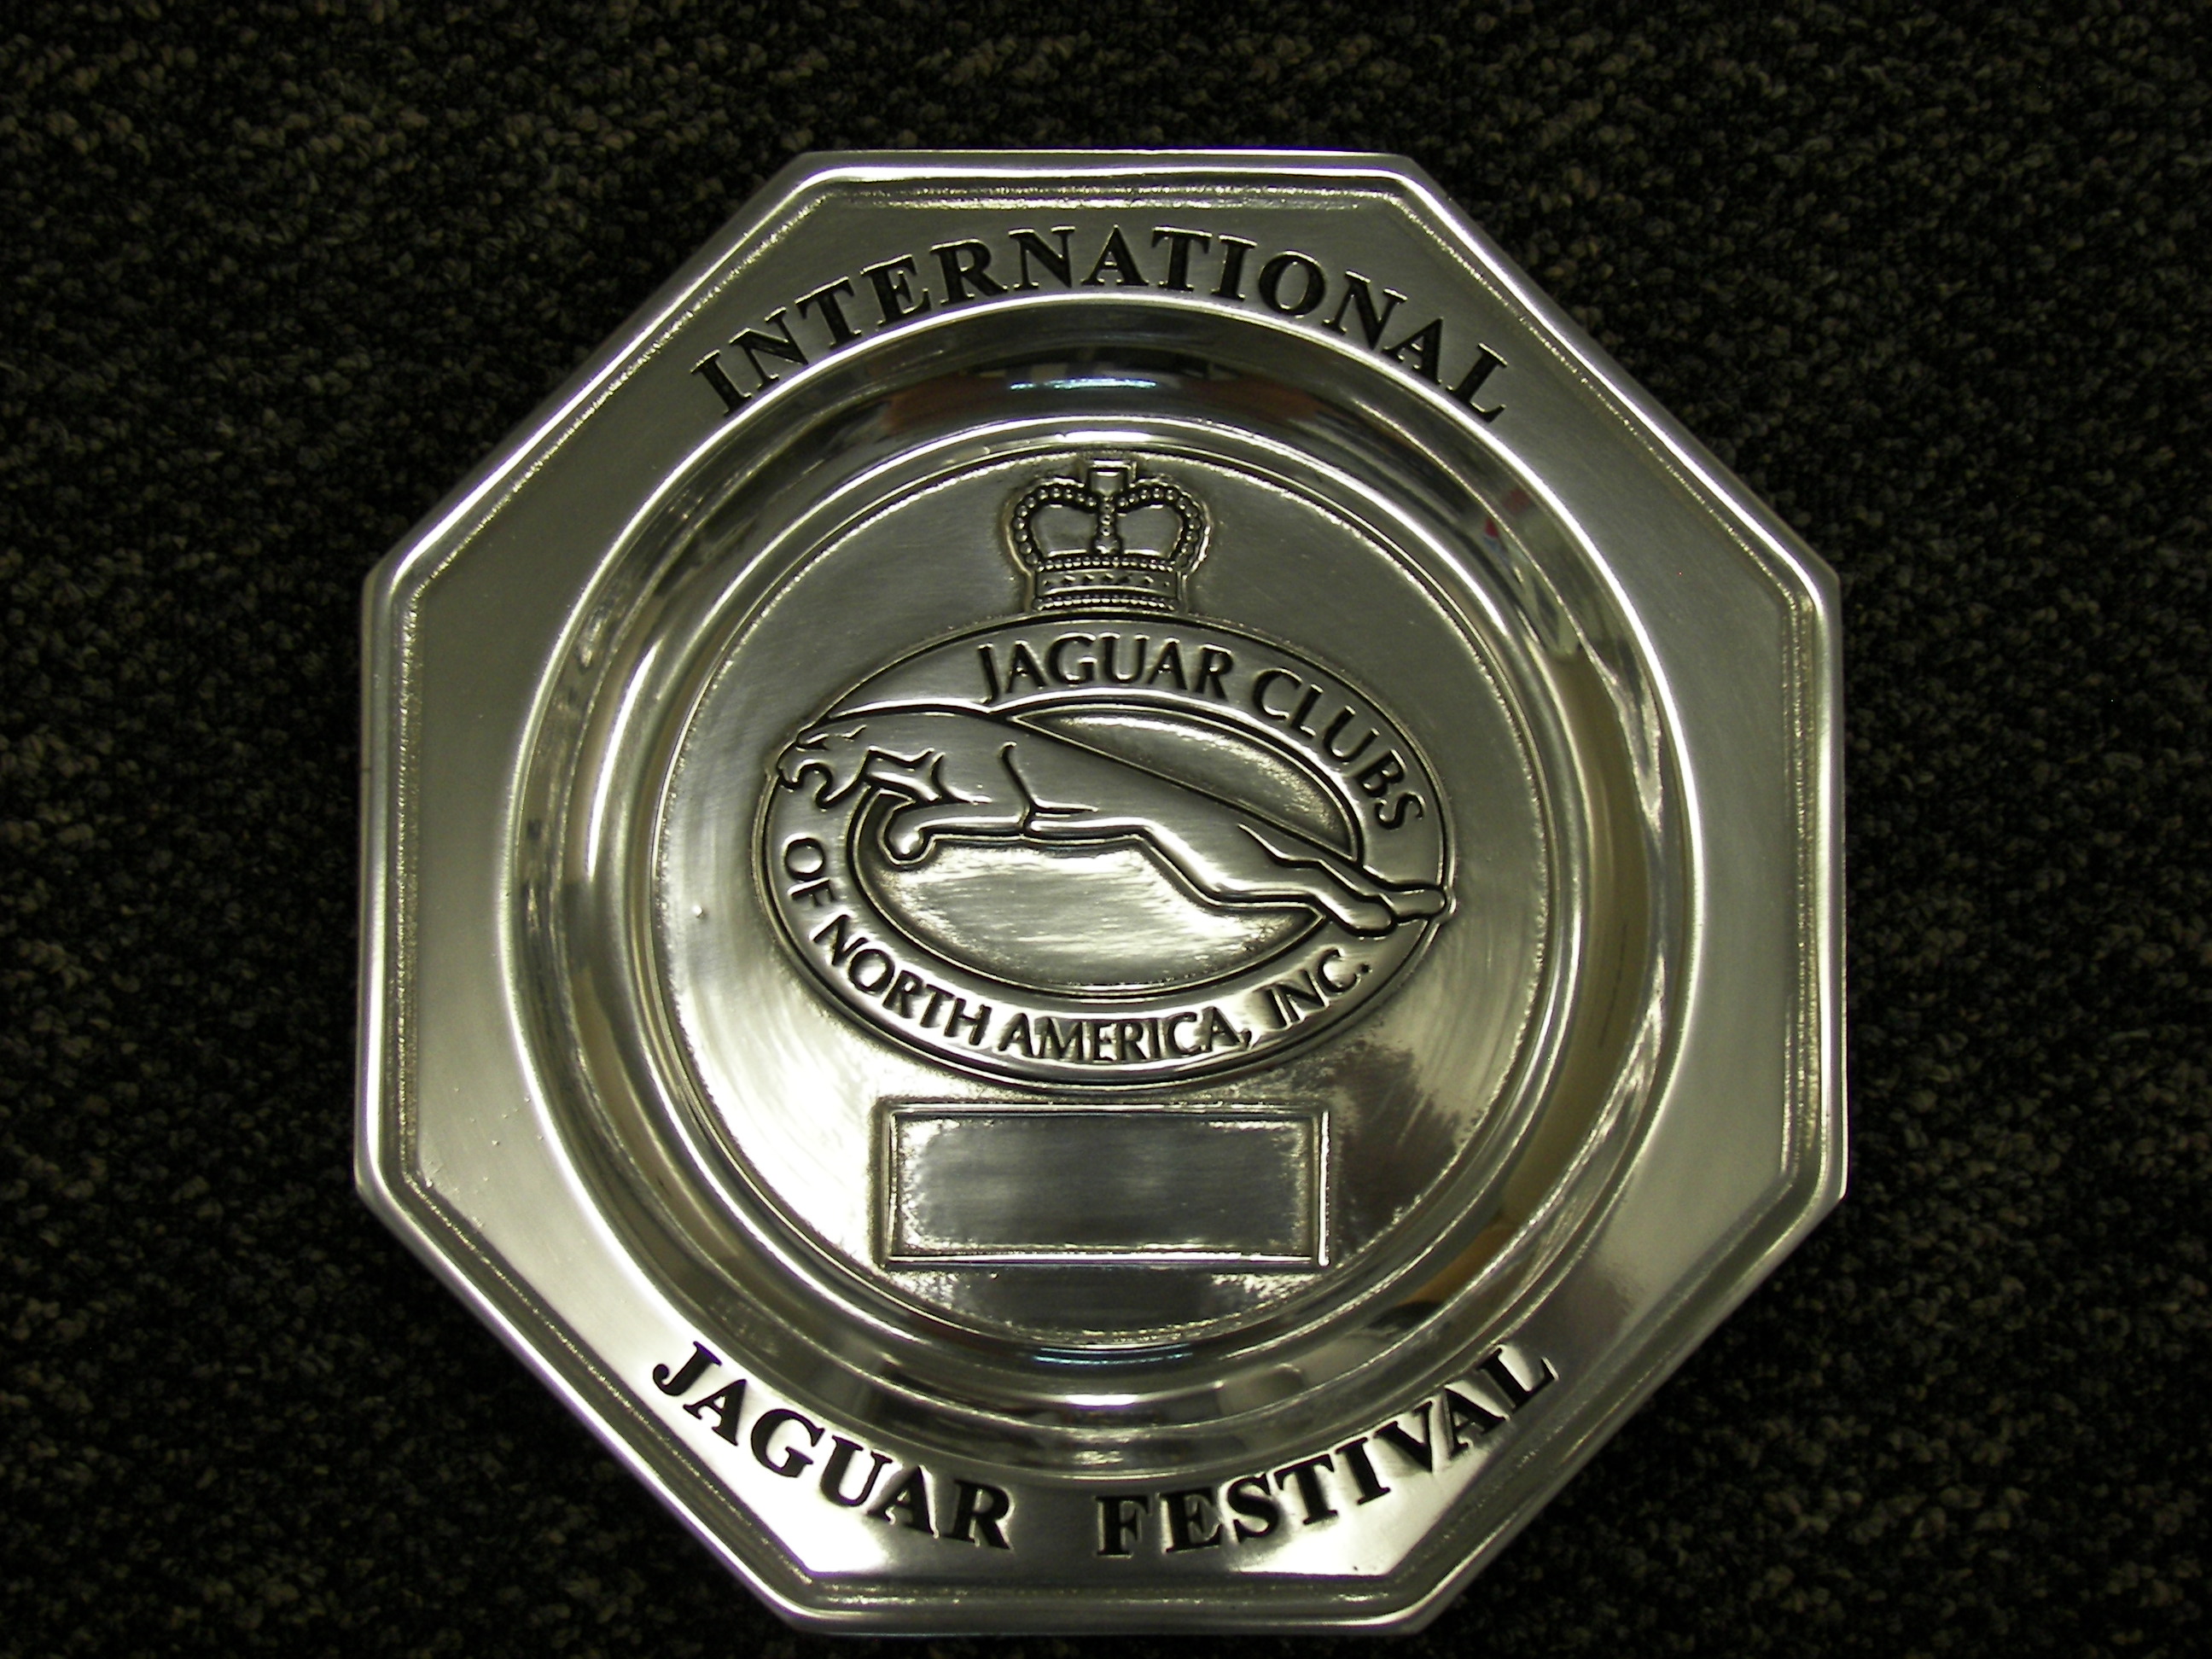 JCNA International Jaguar Festival Trophy